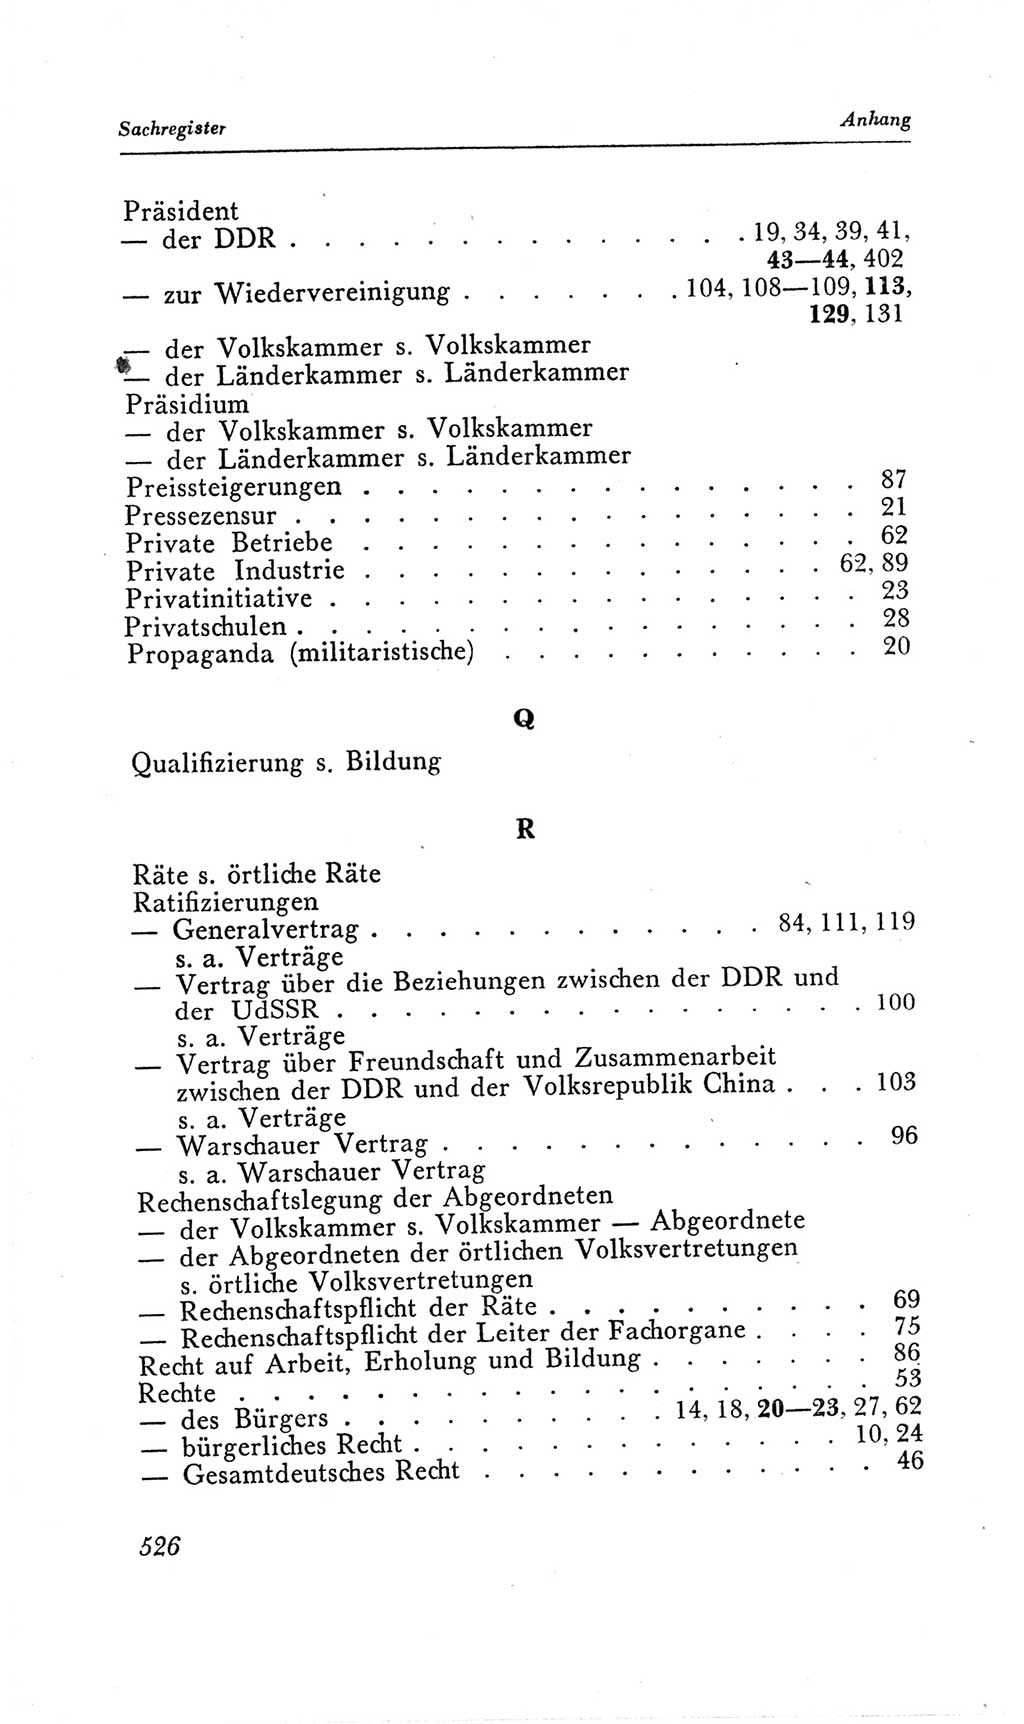 Handbuch der Volkskammer (VK) der Deutschen Demokratischen Republik (DDR), 2. Wahlperiode 1954-1958, Seite 526 (Hdb. VK. DDR, 2. WP. 1954-1958, S. 526)